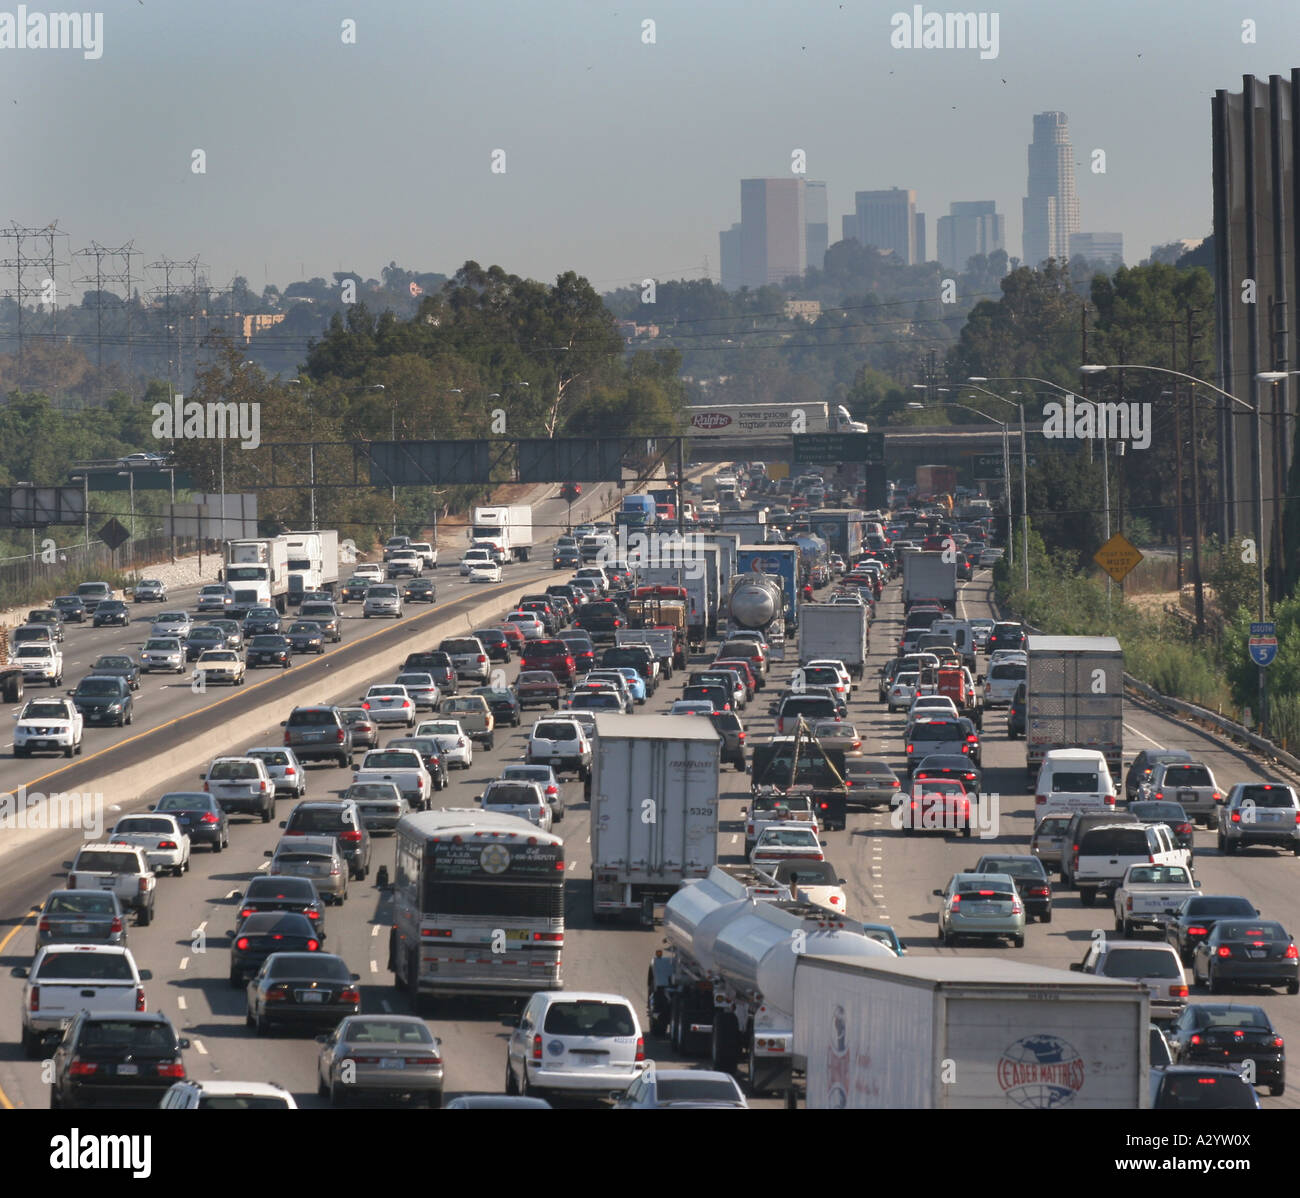 Embouteillage sur l'autoroute 5 dans la région de Los Angeles Californie Banque D'Images